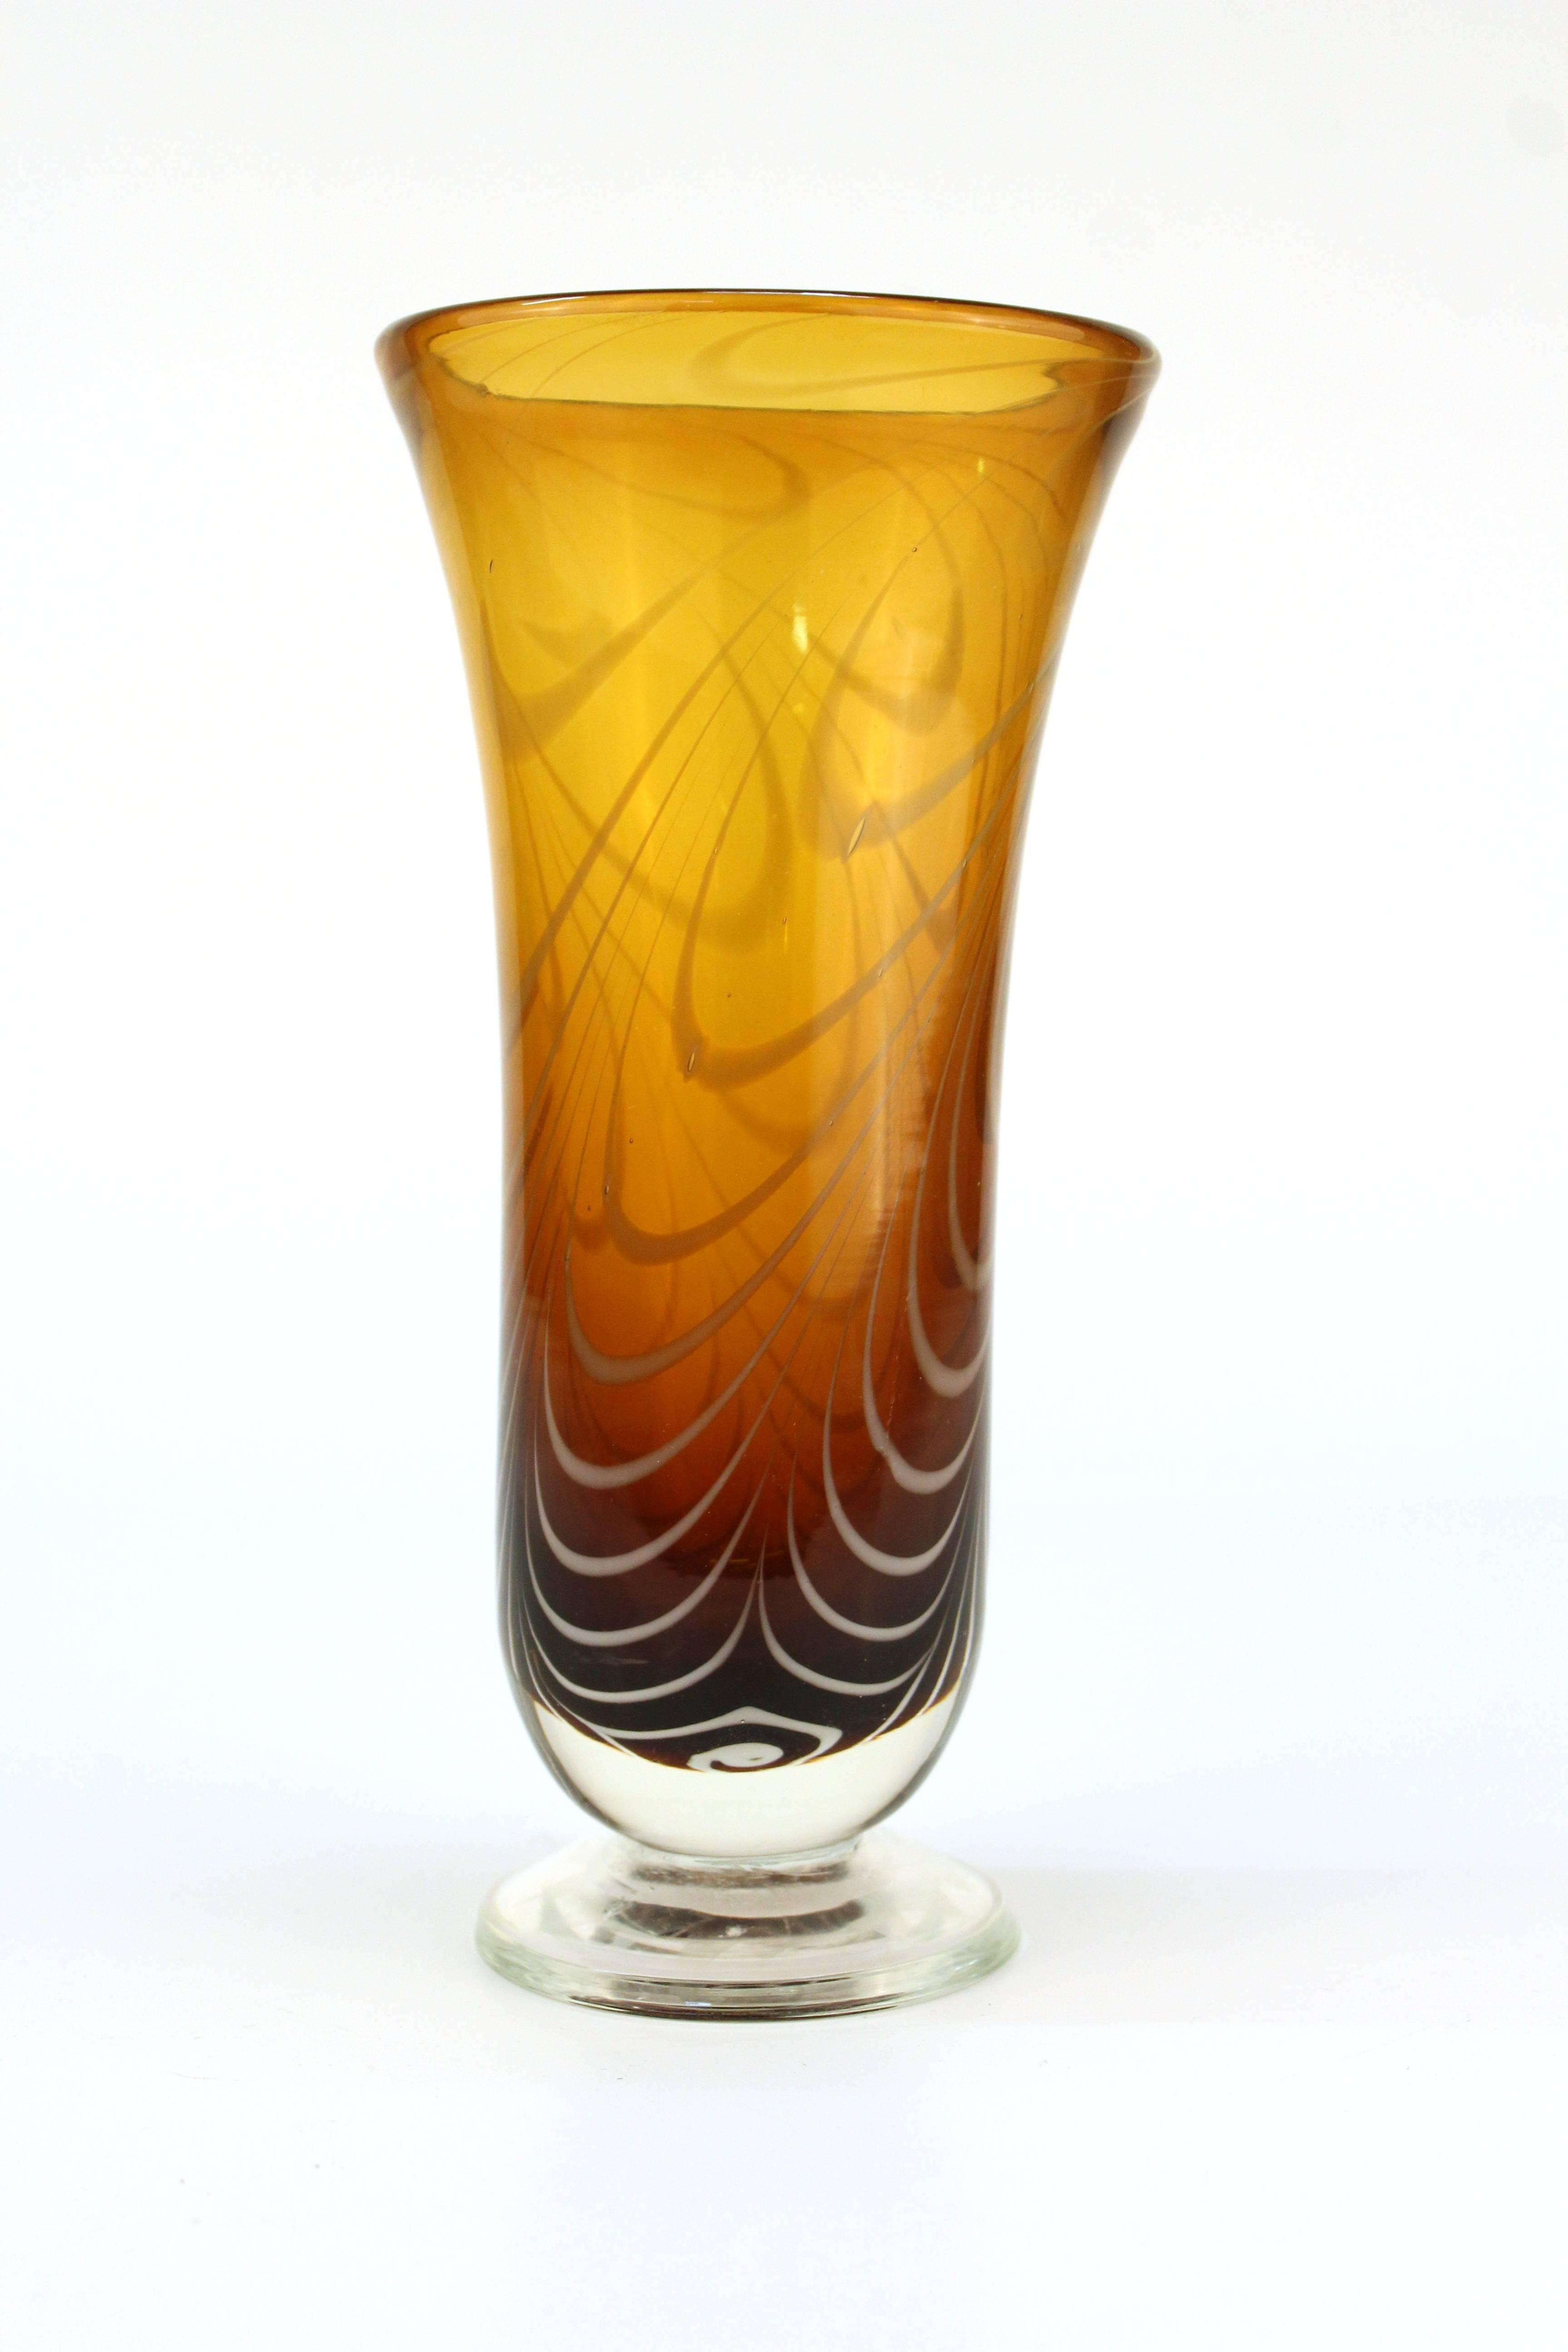 Un vase vintage en verre d'art ambré, artistiquement orné de tourbillons blancs. 

110611

 